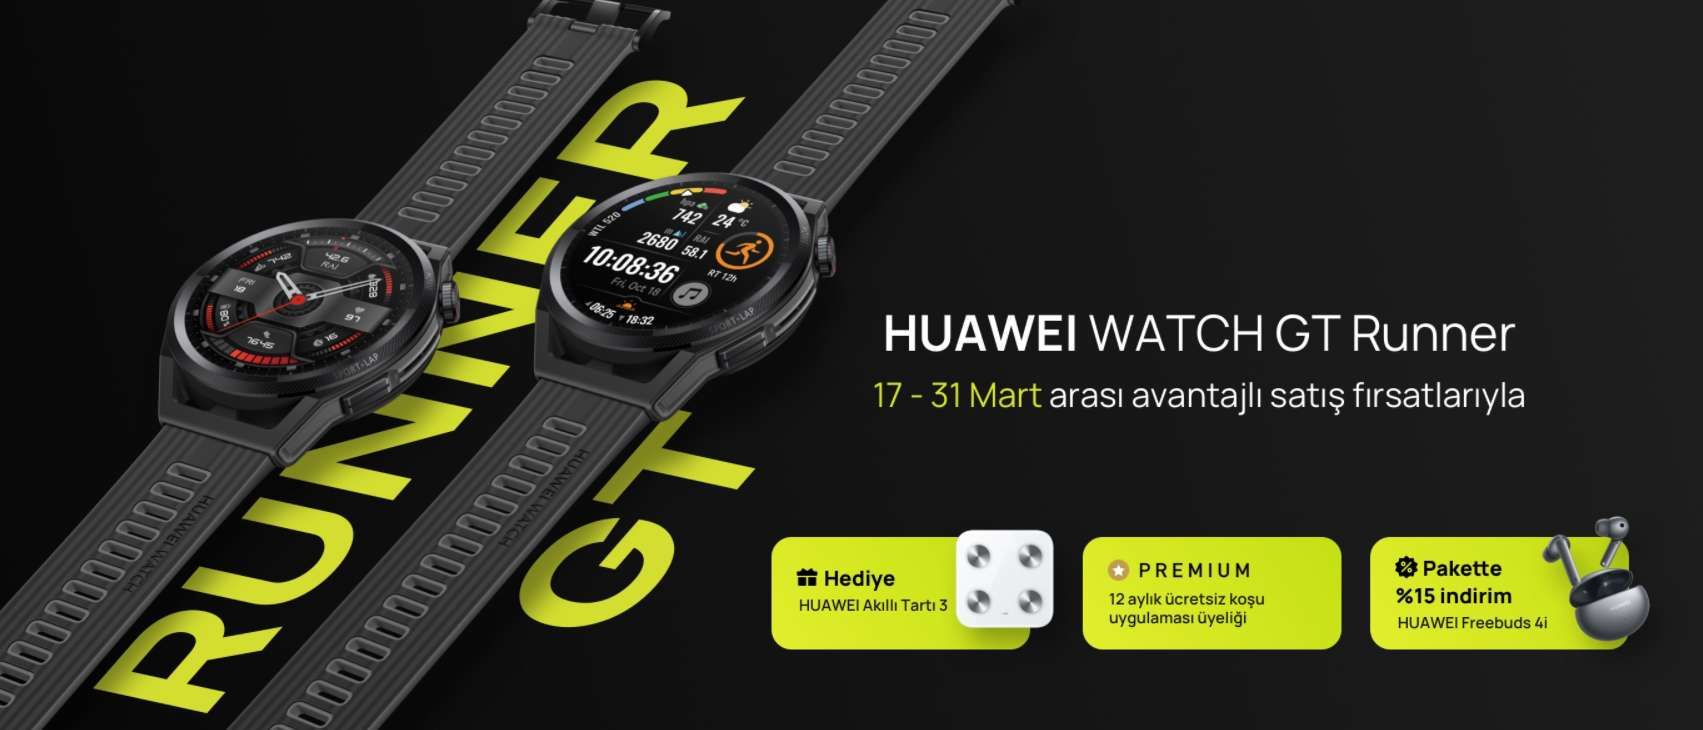 HUAWEI Watch GT Runner, HUAWEI Online mağazasında satışa çıktı